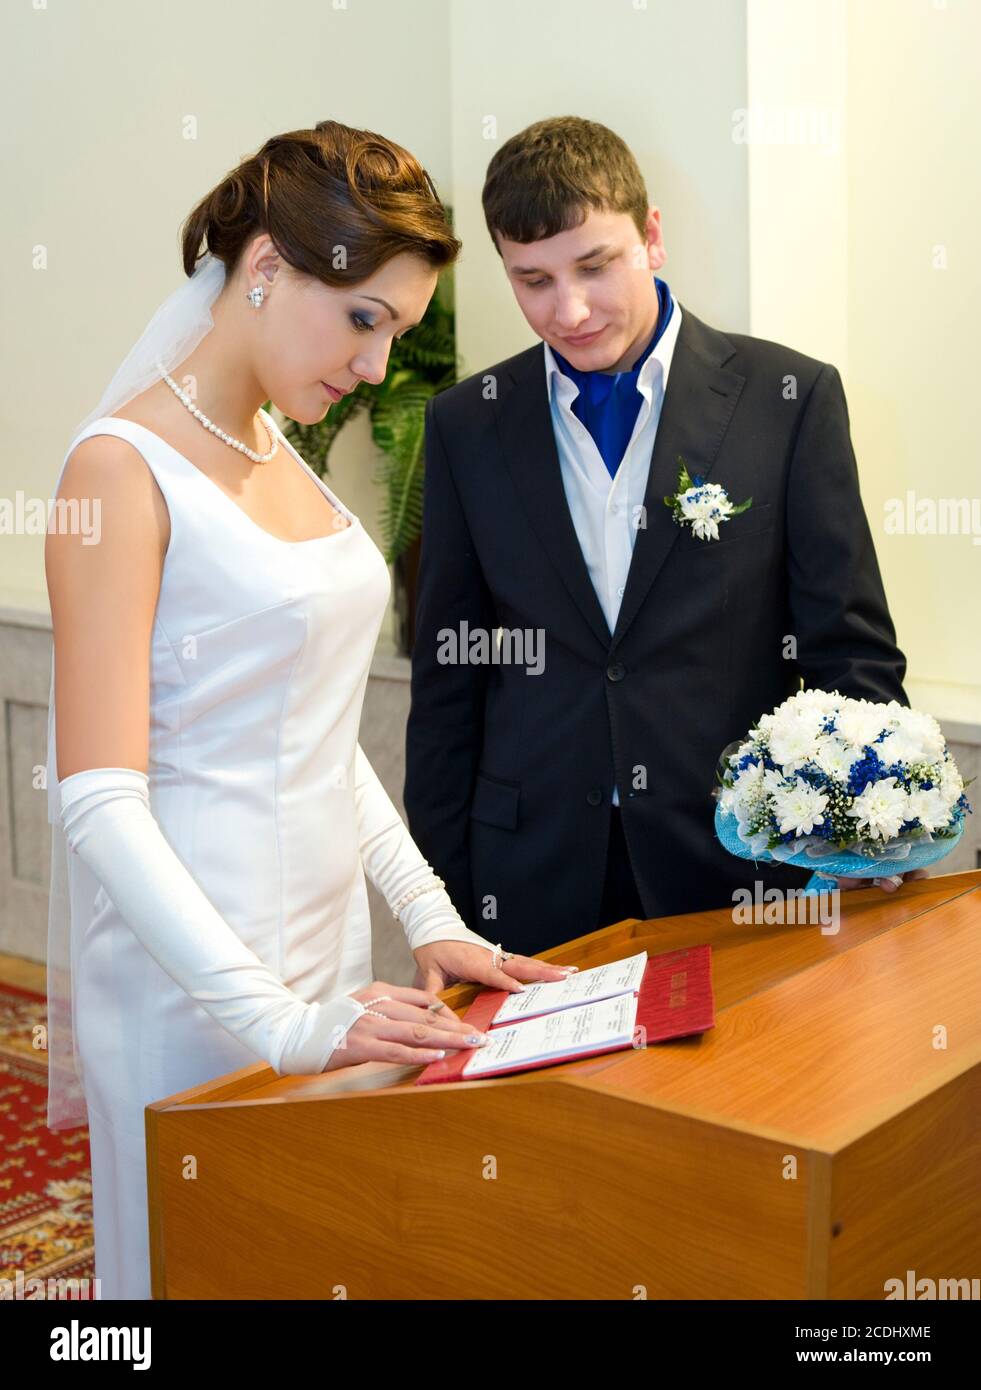 registro de matrimonio Foto de stock